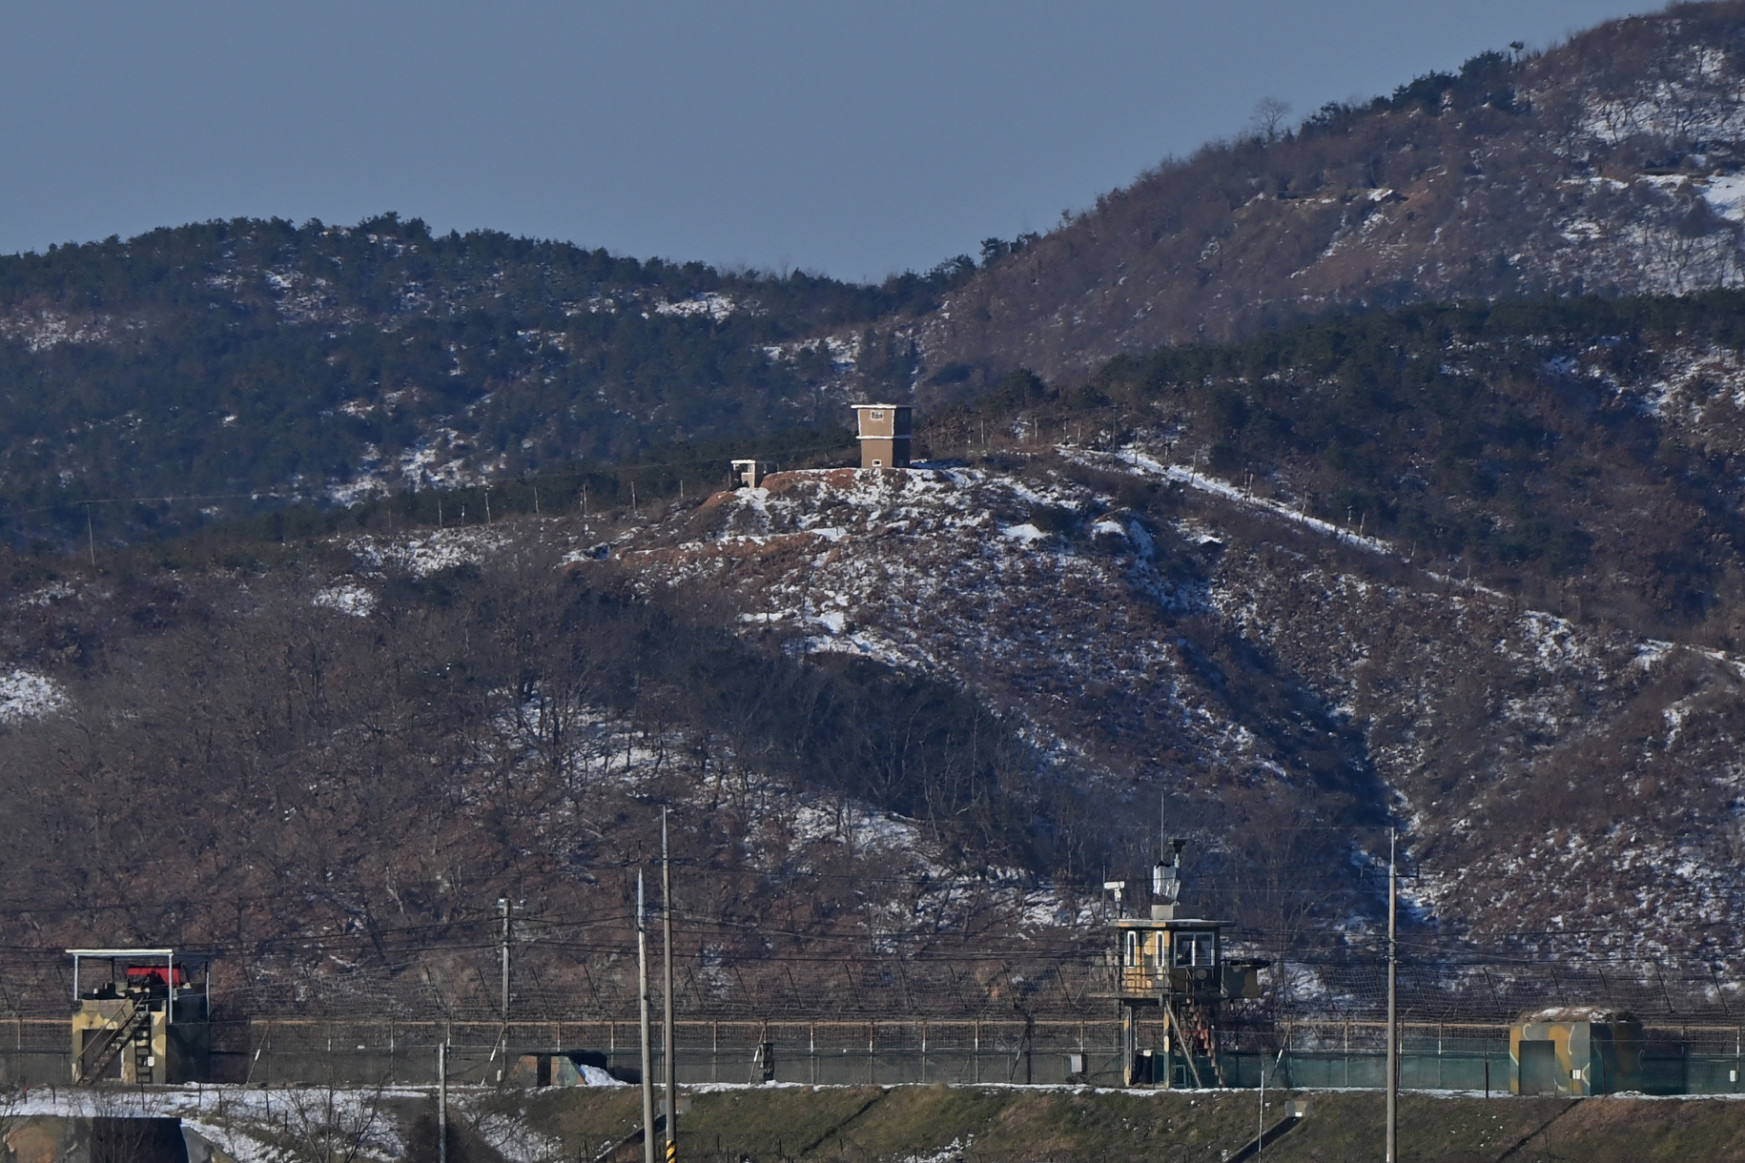 Lassan összeáll a kép, mi történt az Észak-Koreába aknamezőkön át visszaszökő férfivel